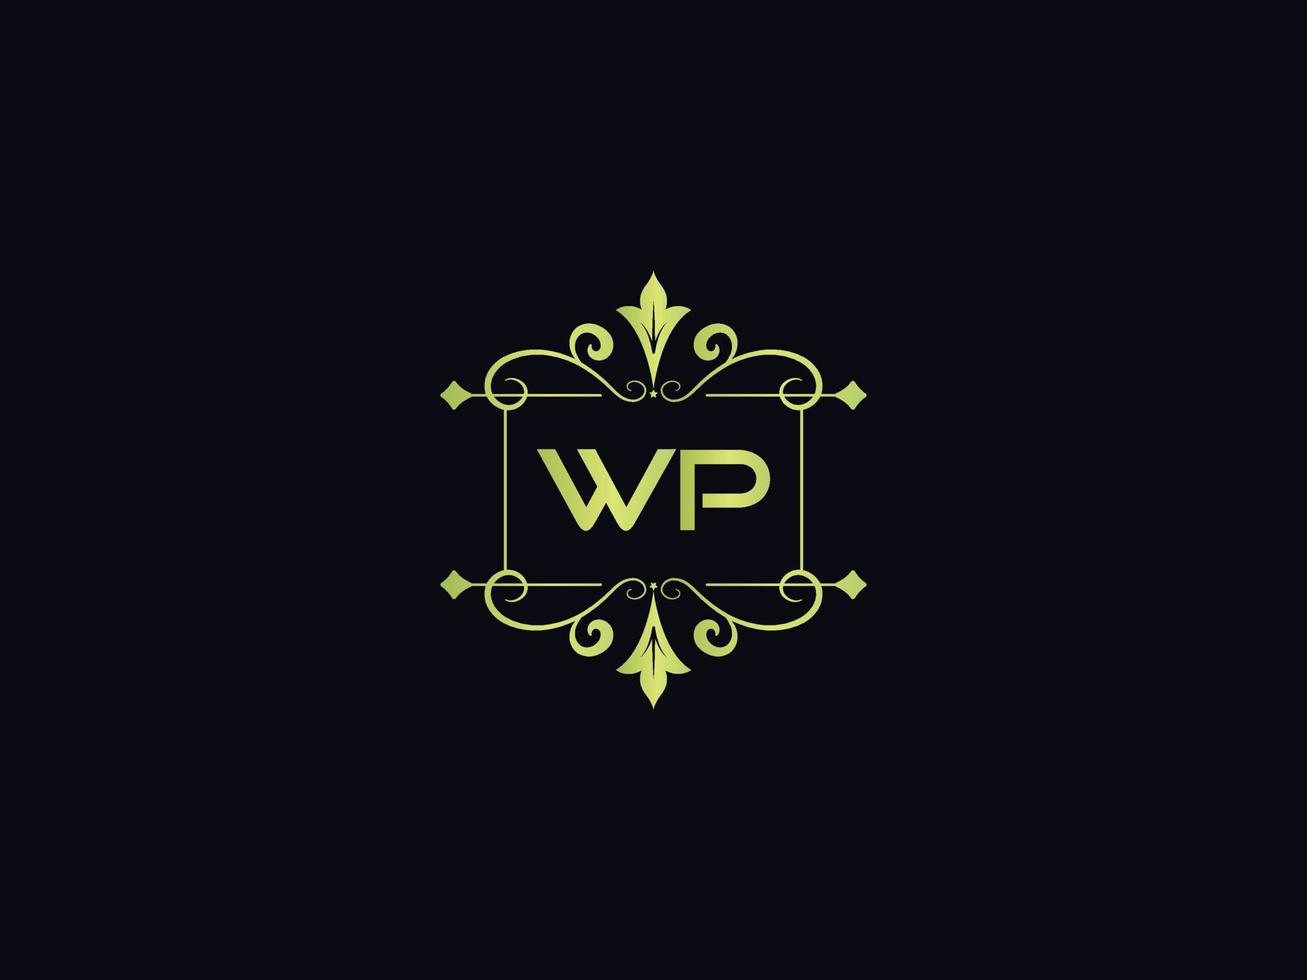 Typografie-wp-Logo-Symbol, einzigartiges wp-Luxus-Logo mit bunten Buchstaben vektor